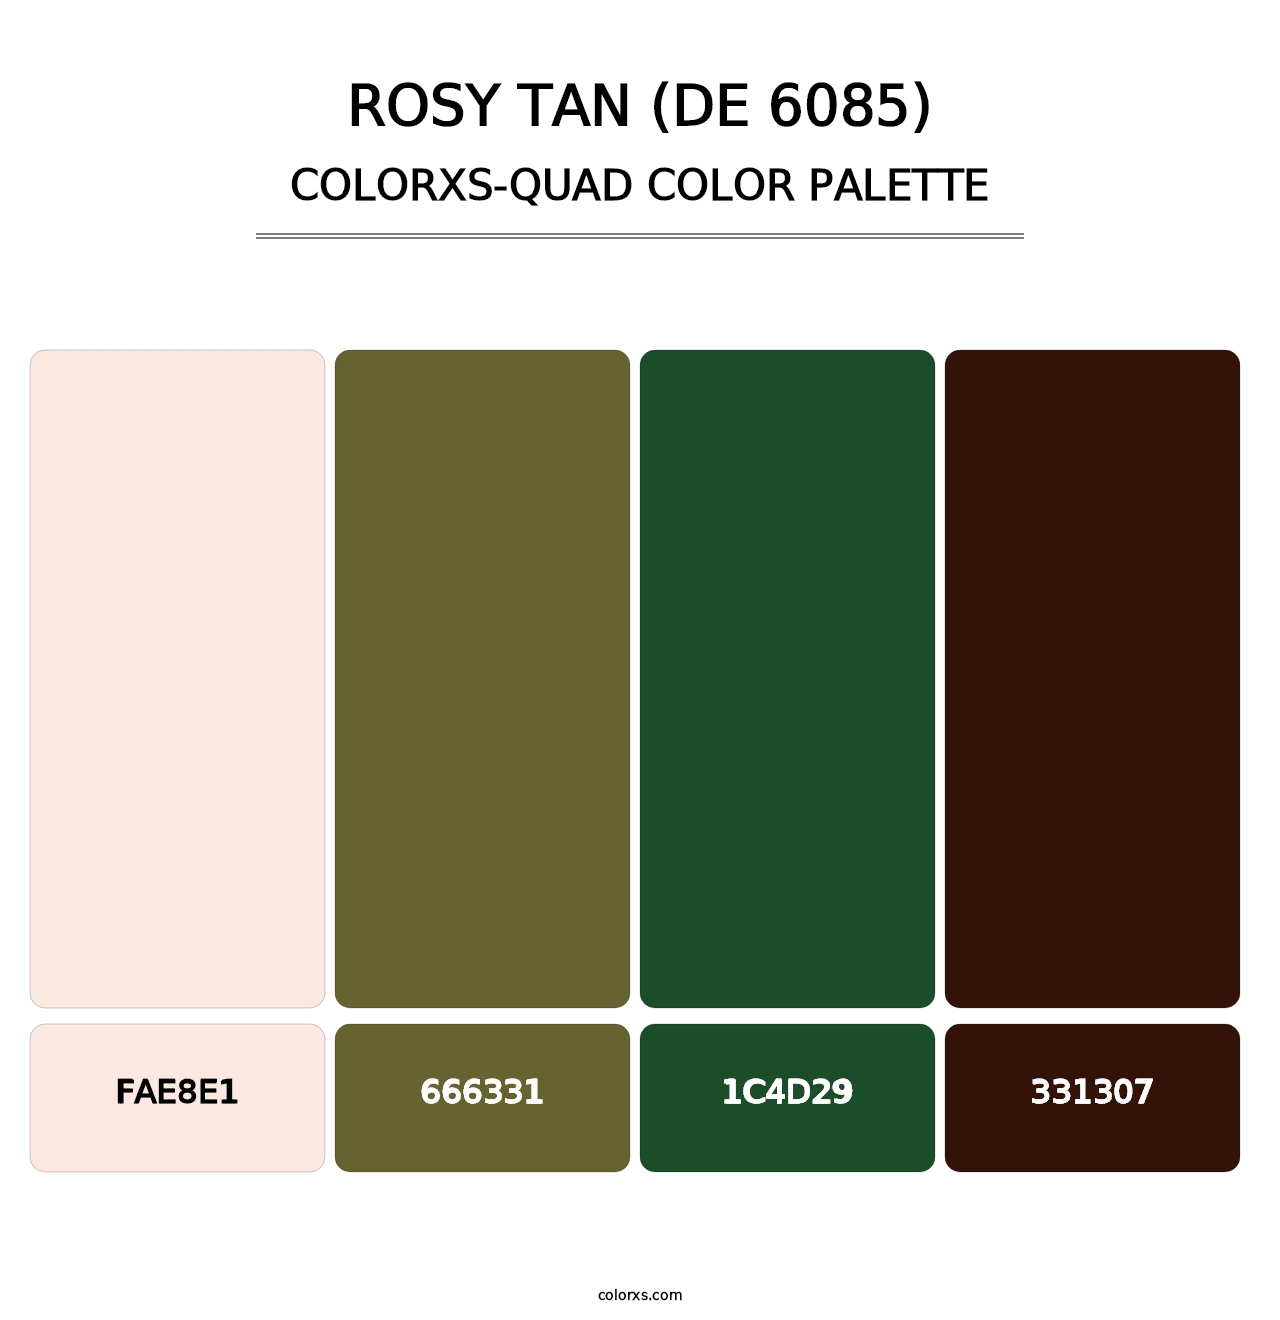 Rosy Tan (DE 6085) - Colorxs Quad Palette